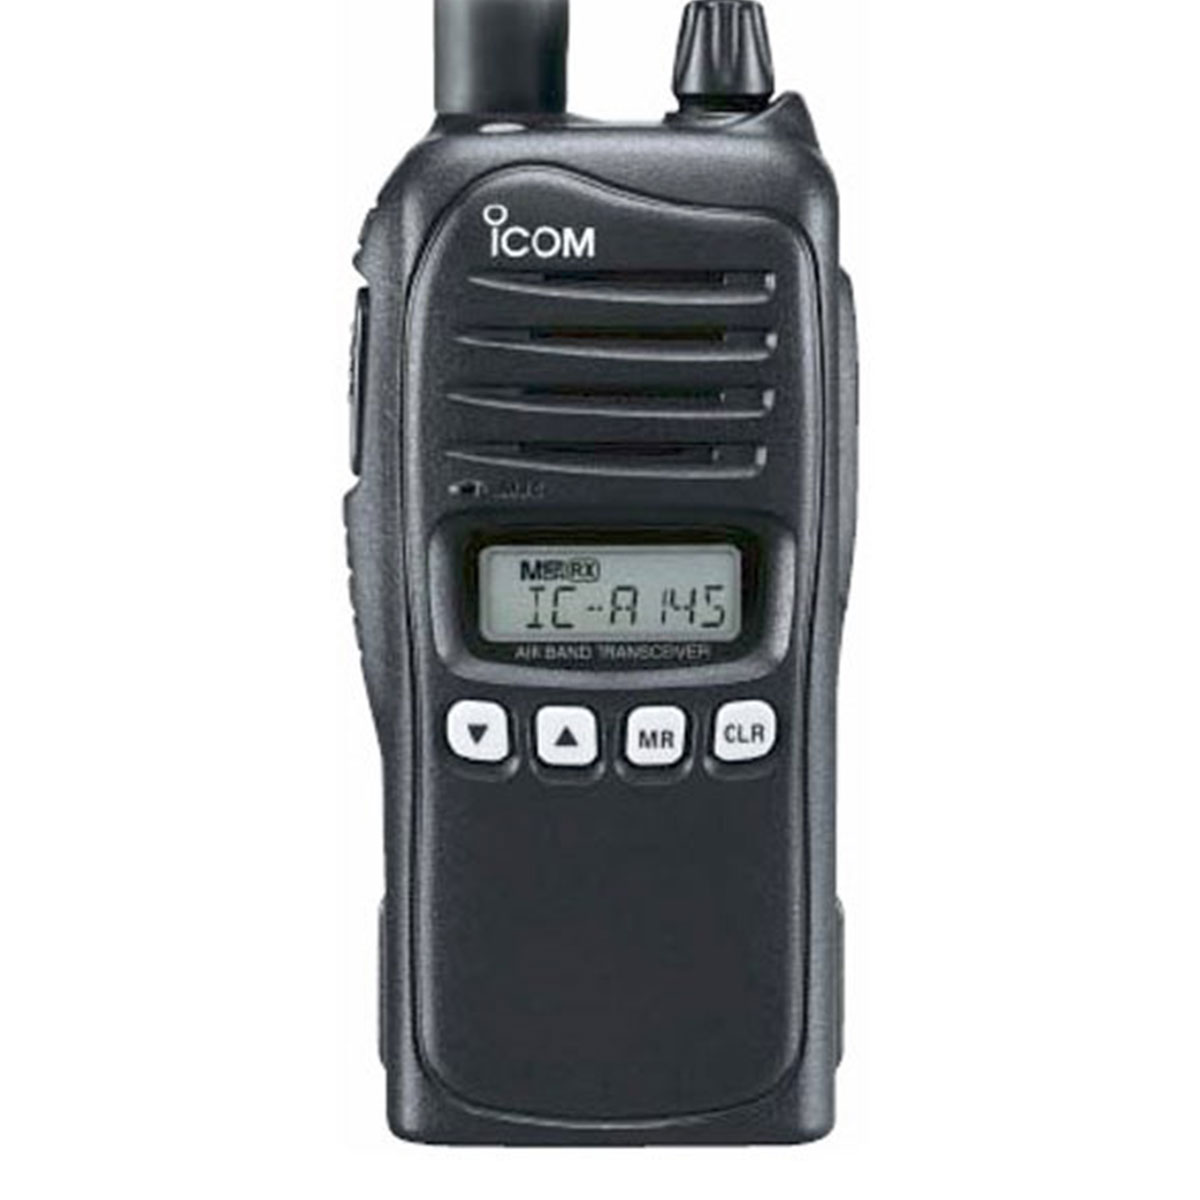 Radio Icom IC-A14 Analógico Banda Aérea con Teclado Completo